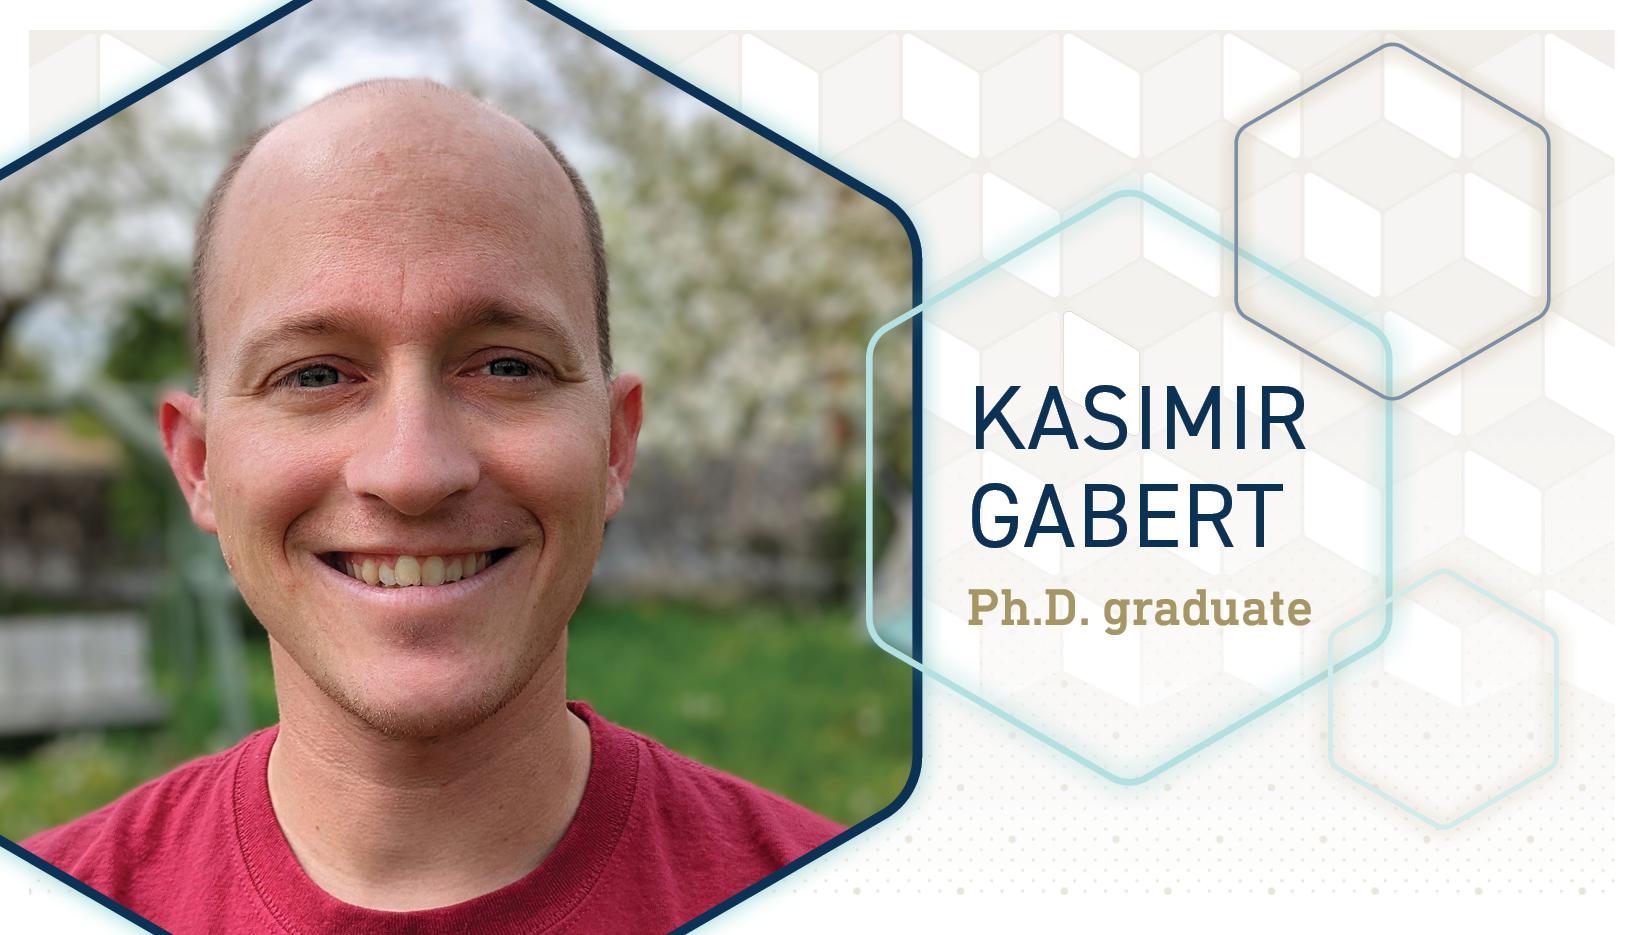 CSE Ph.D. graduate Kasimir Gabert